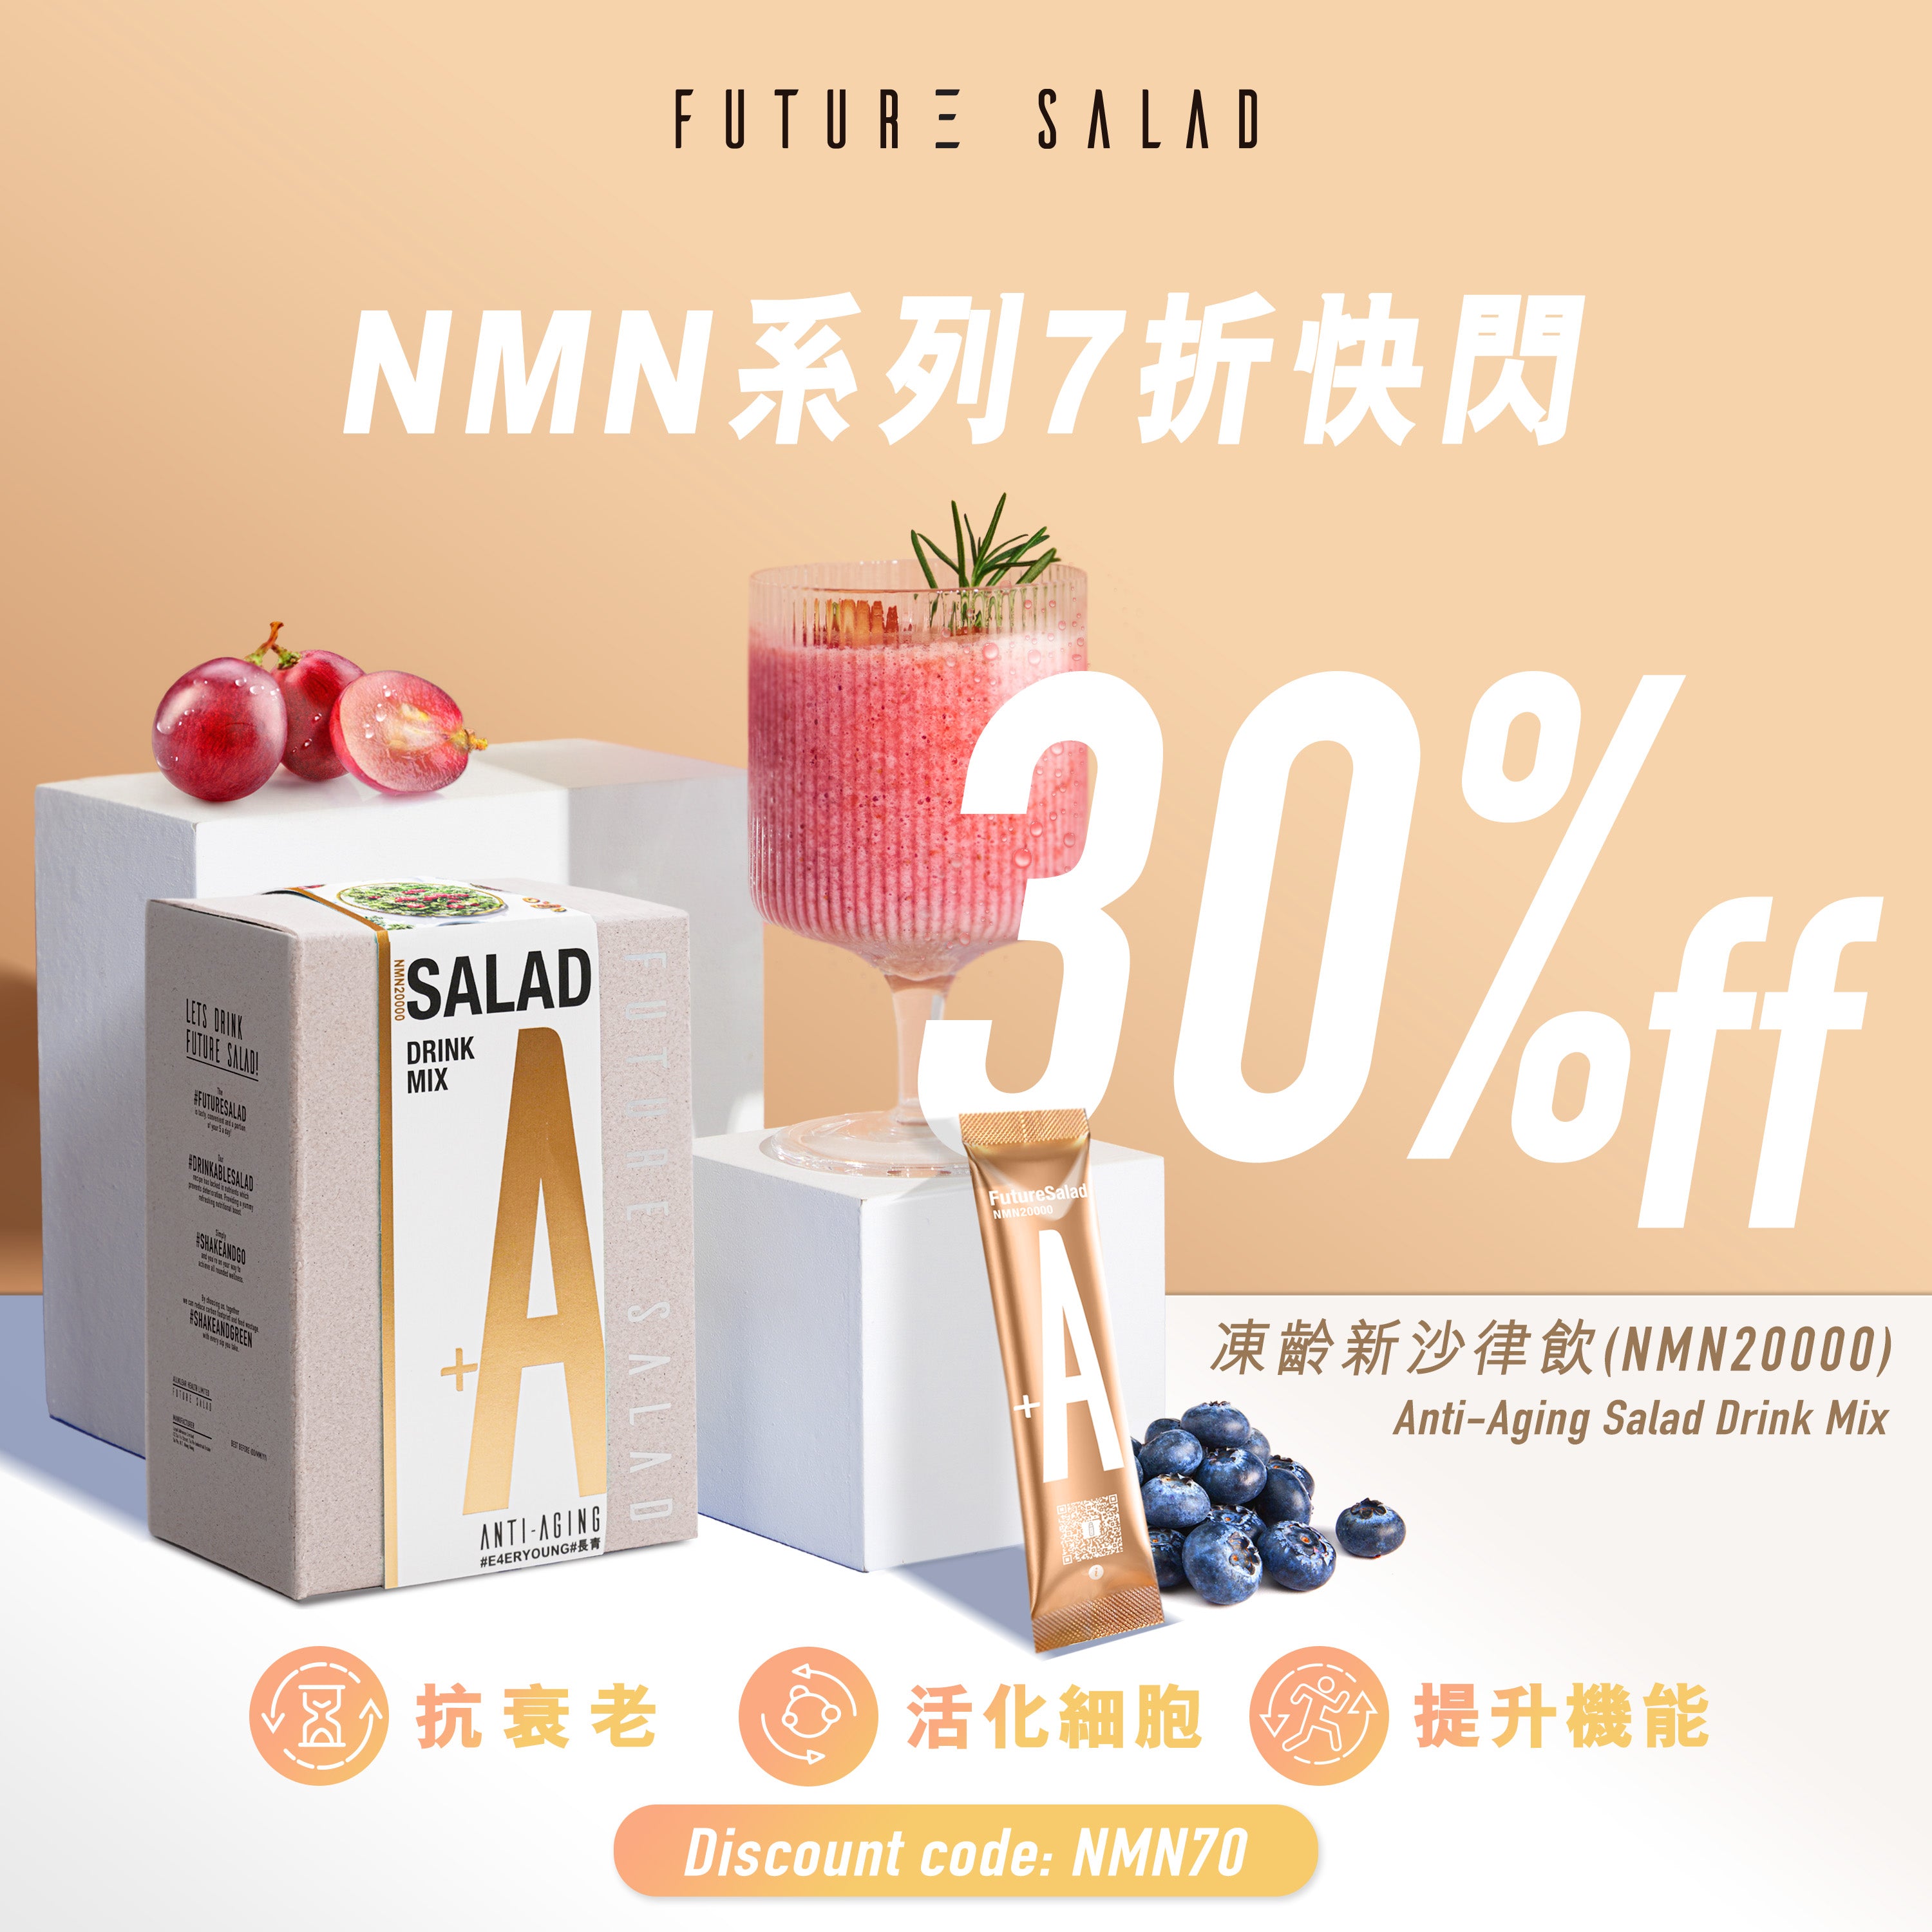 【2024年5月到期】凍齡新沙律飲 (NMN20000) Anti-Aging Salad Drink Mix 7包體驗裝 送水樽